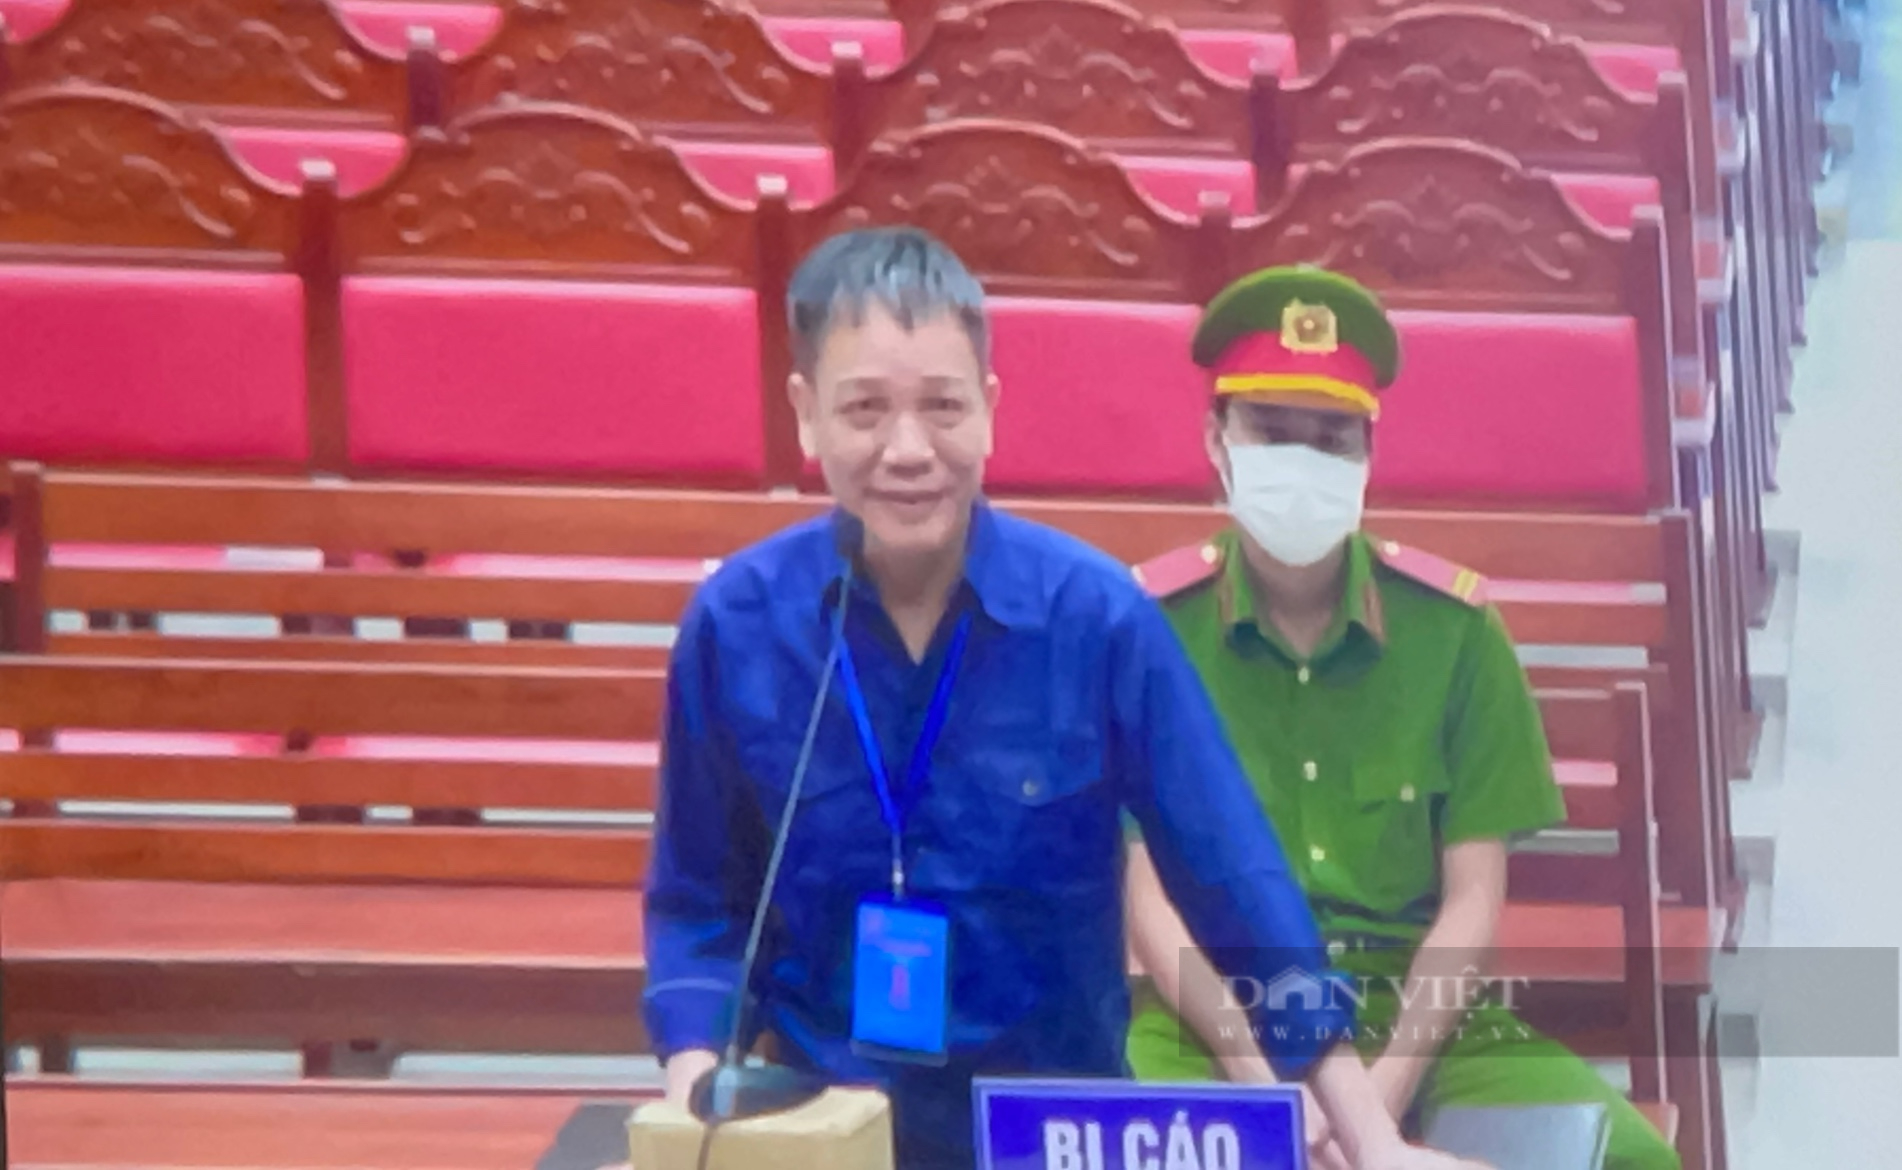 Đại án xăng lậu: Nguyễn Minh Khoa có nghi ngờ vận chuyển xăng lậu nhưng “im lặng” vì không chắc chắn - Ảnh 1.